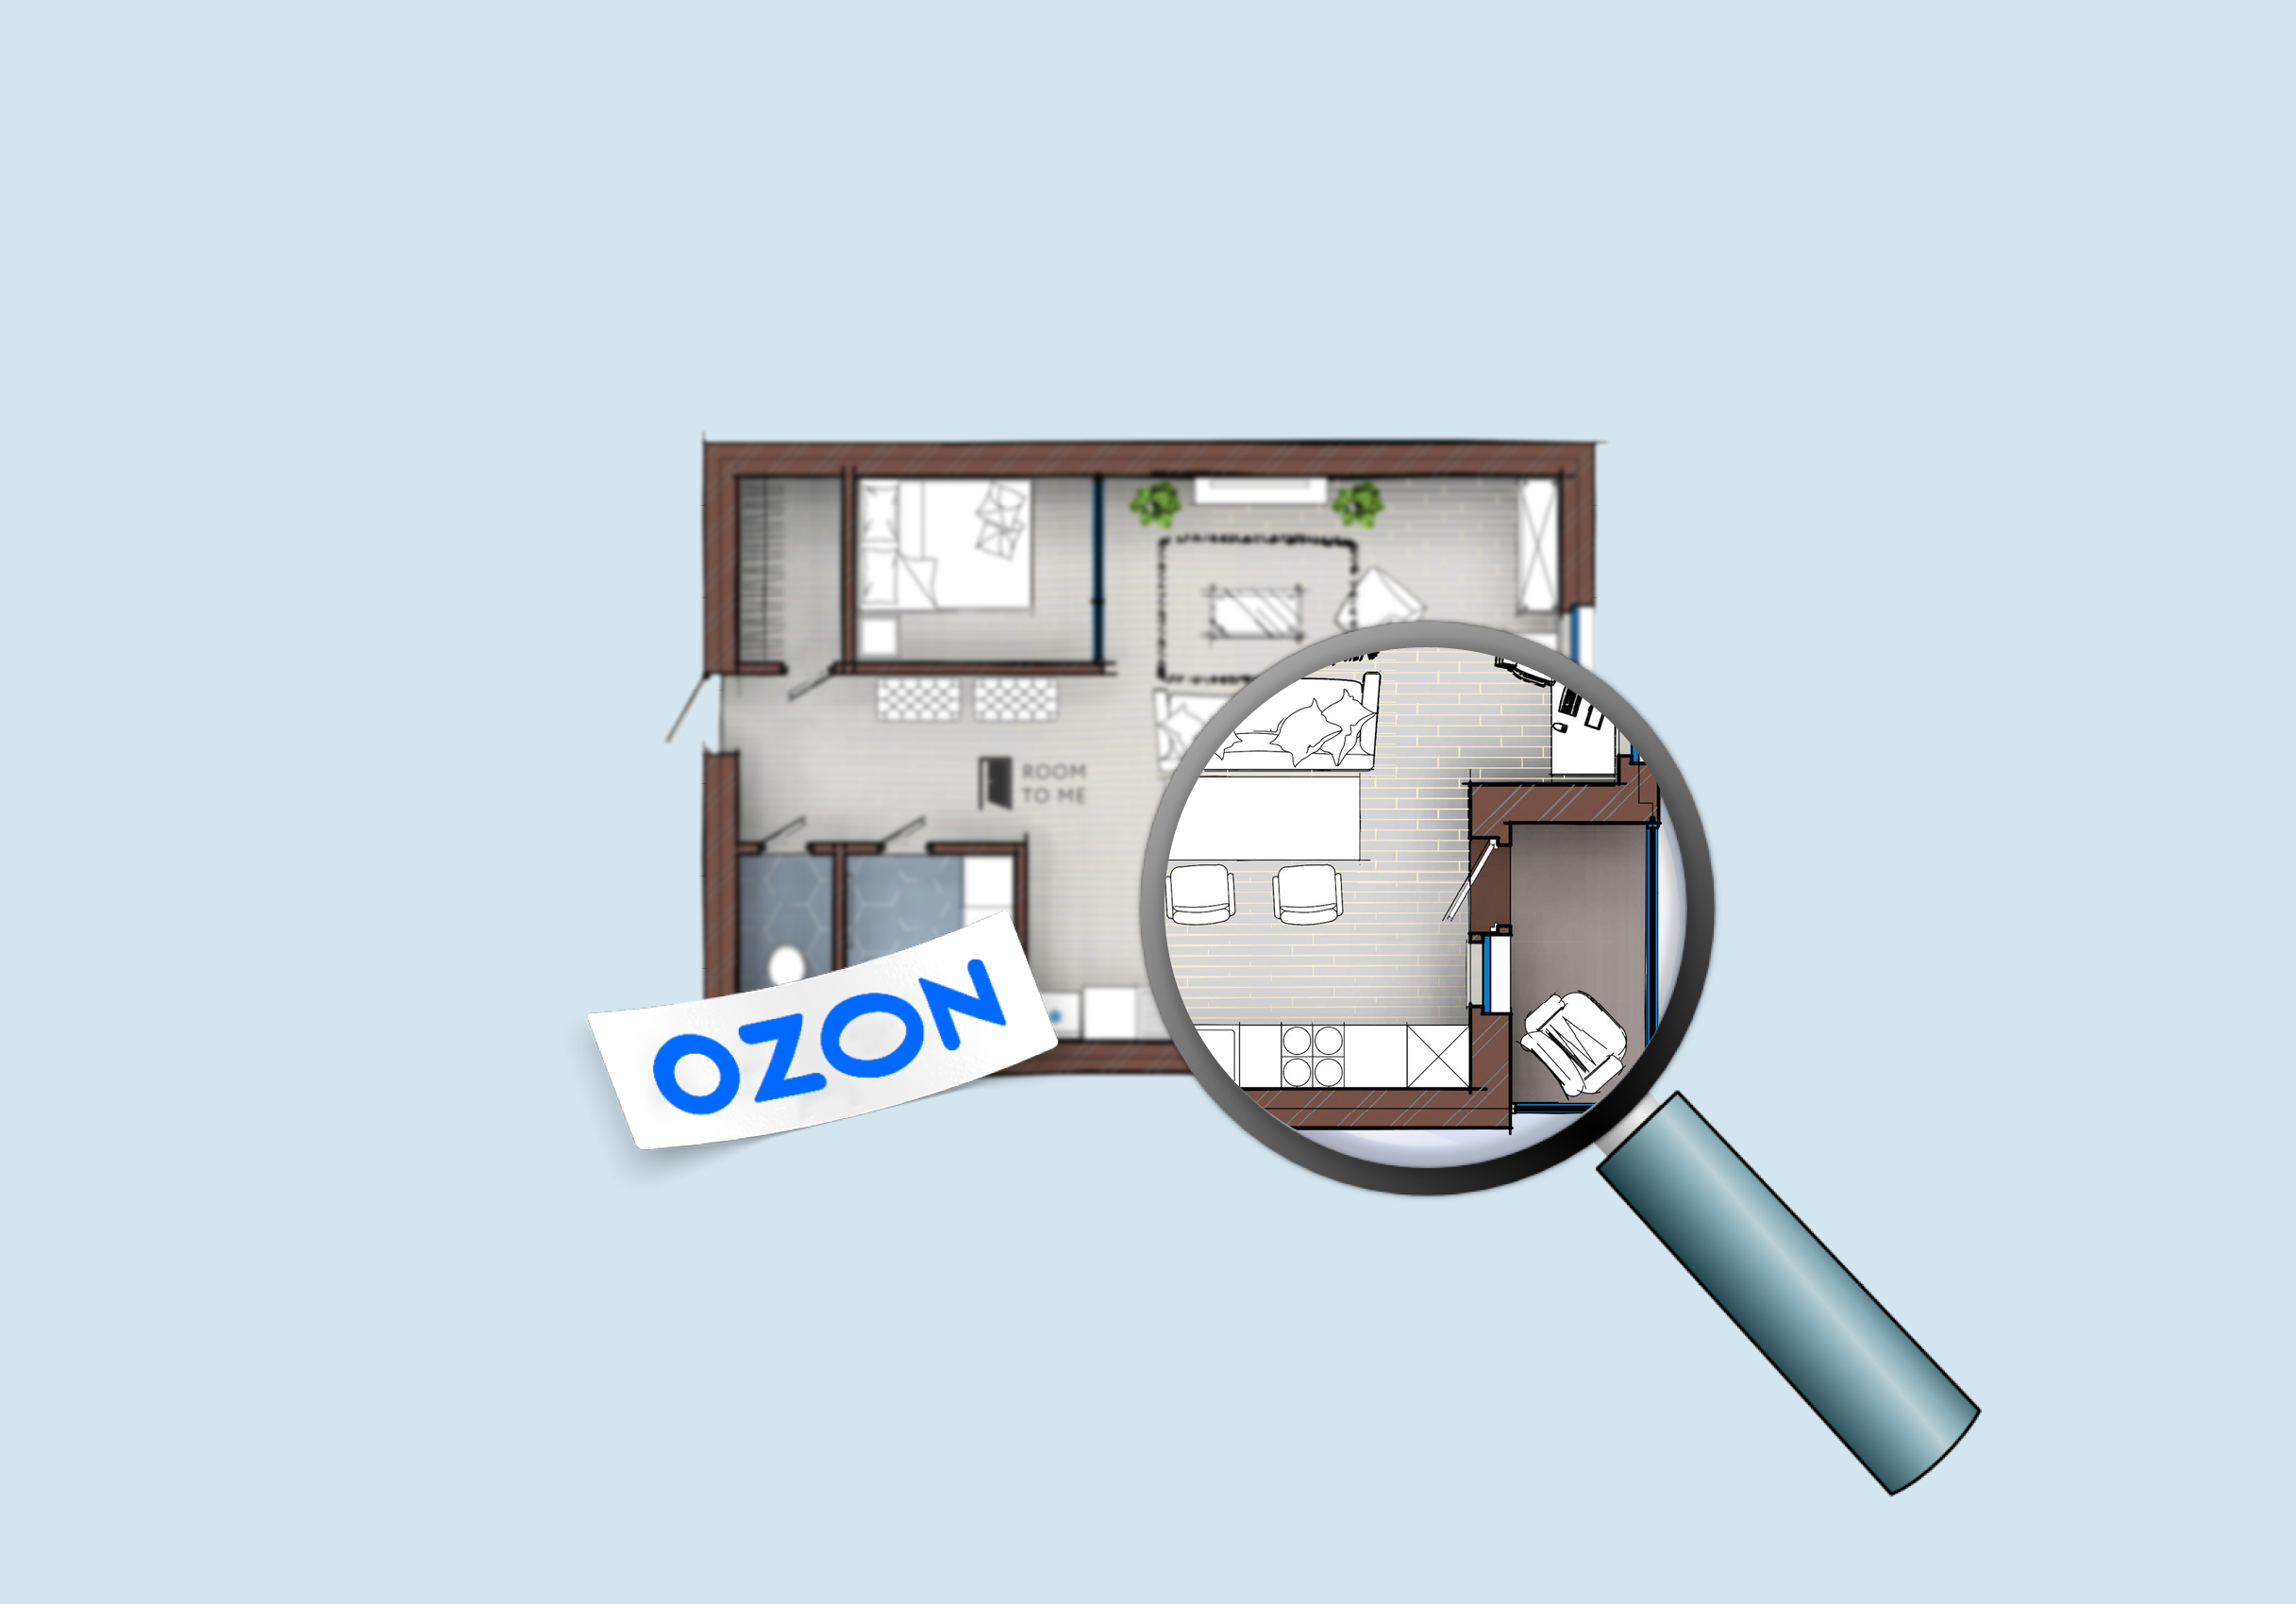 «Кортрос» начал продавать квартиры на Ozon. Мы попробовали купить одну